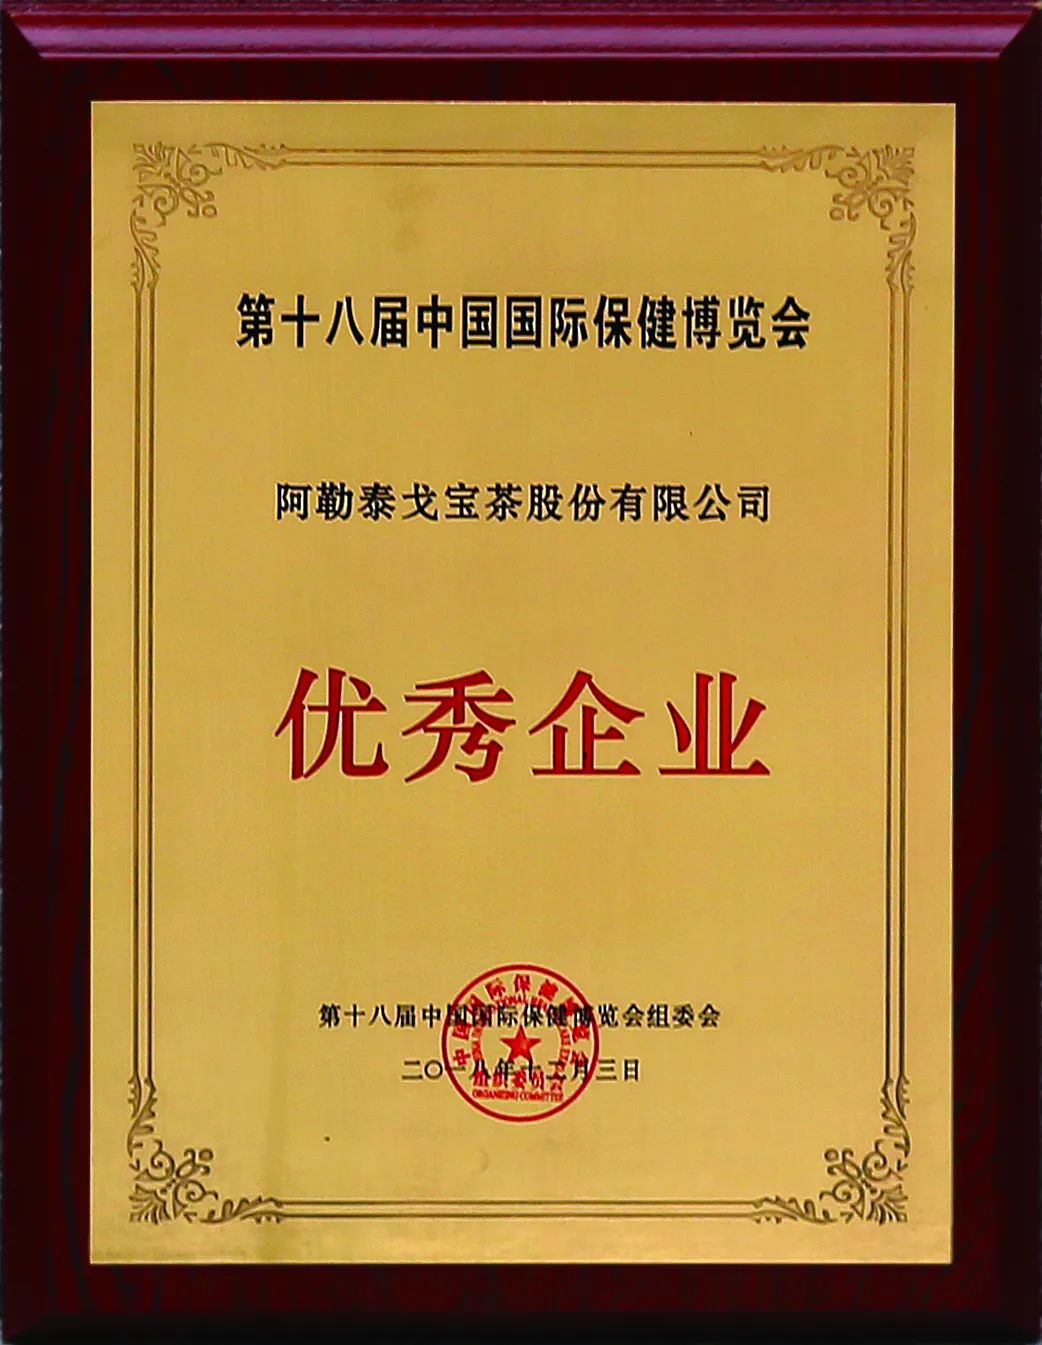 【戈宝红麻茶】在第18届中国国际保健博览会上荣获多项大奖(图3)